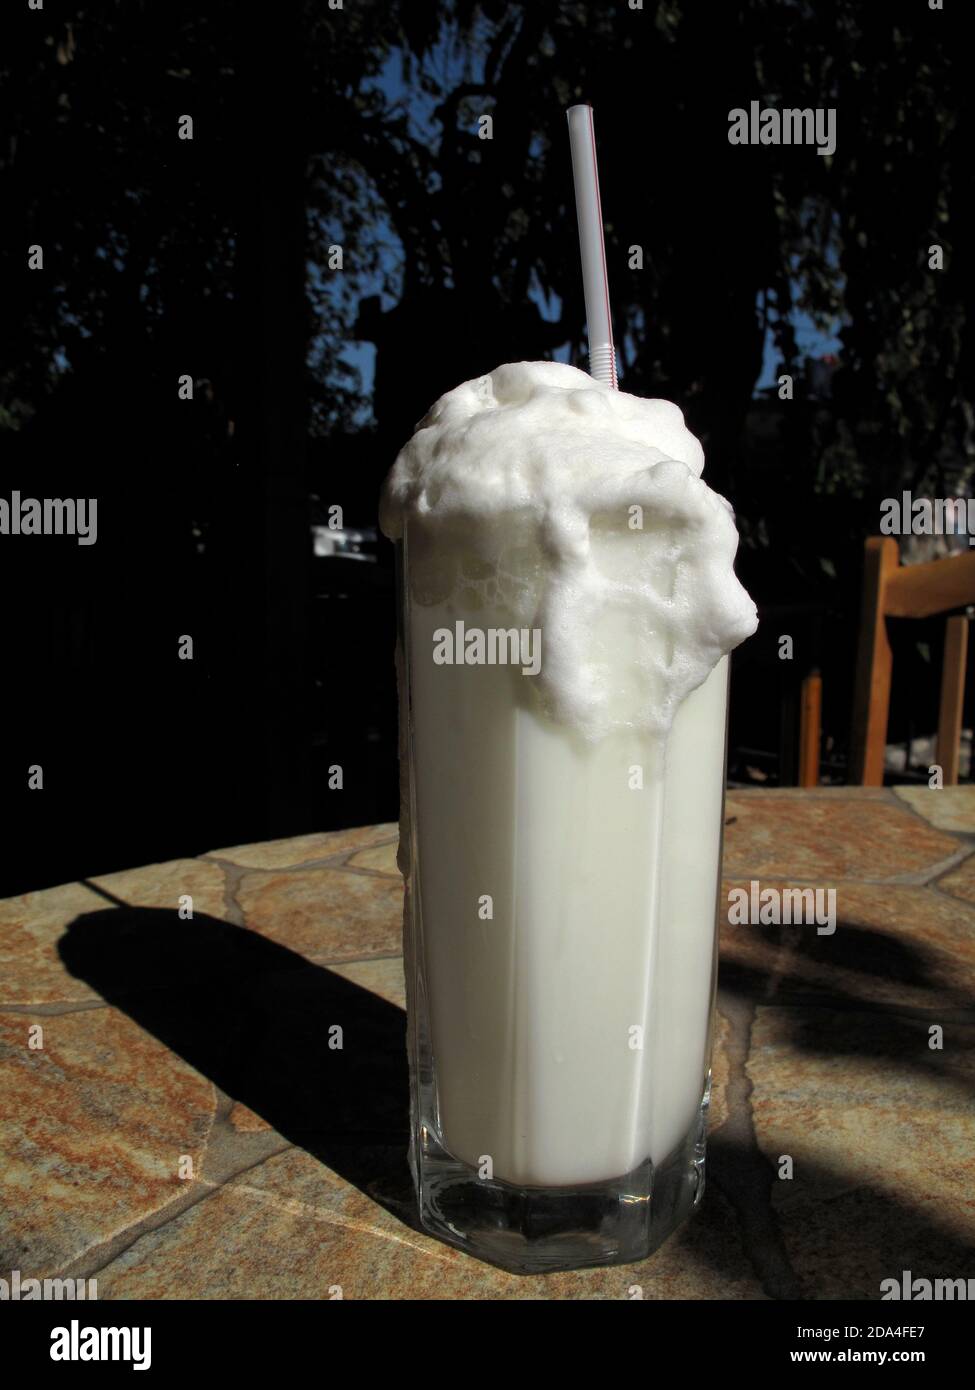 Un refrescante vaso de ayran (bebida a base de yogur) Foto de stock